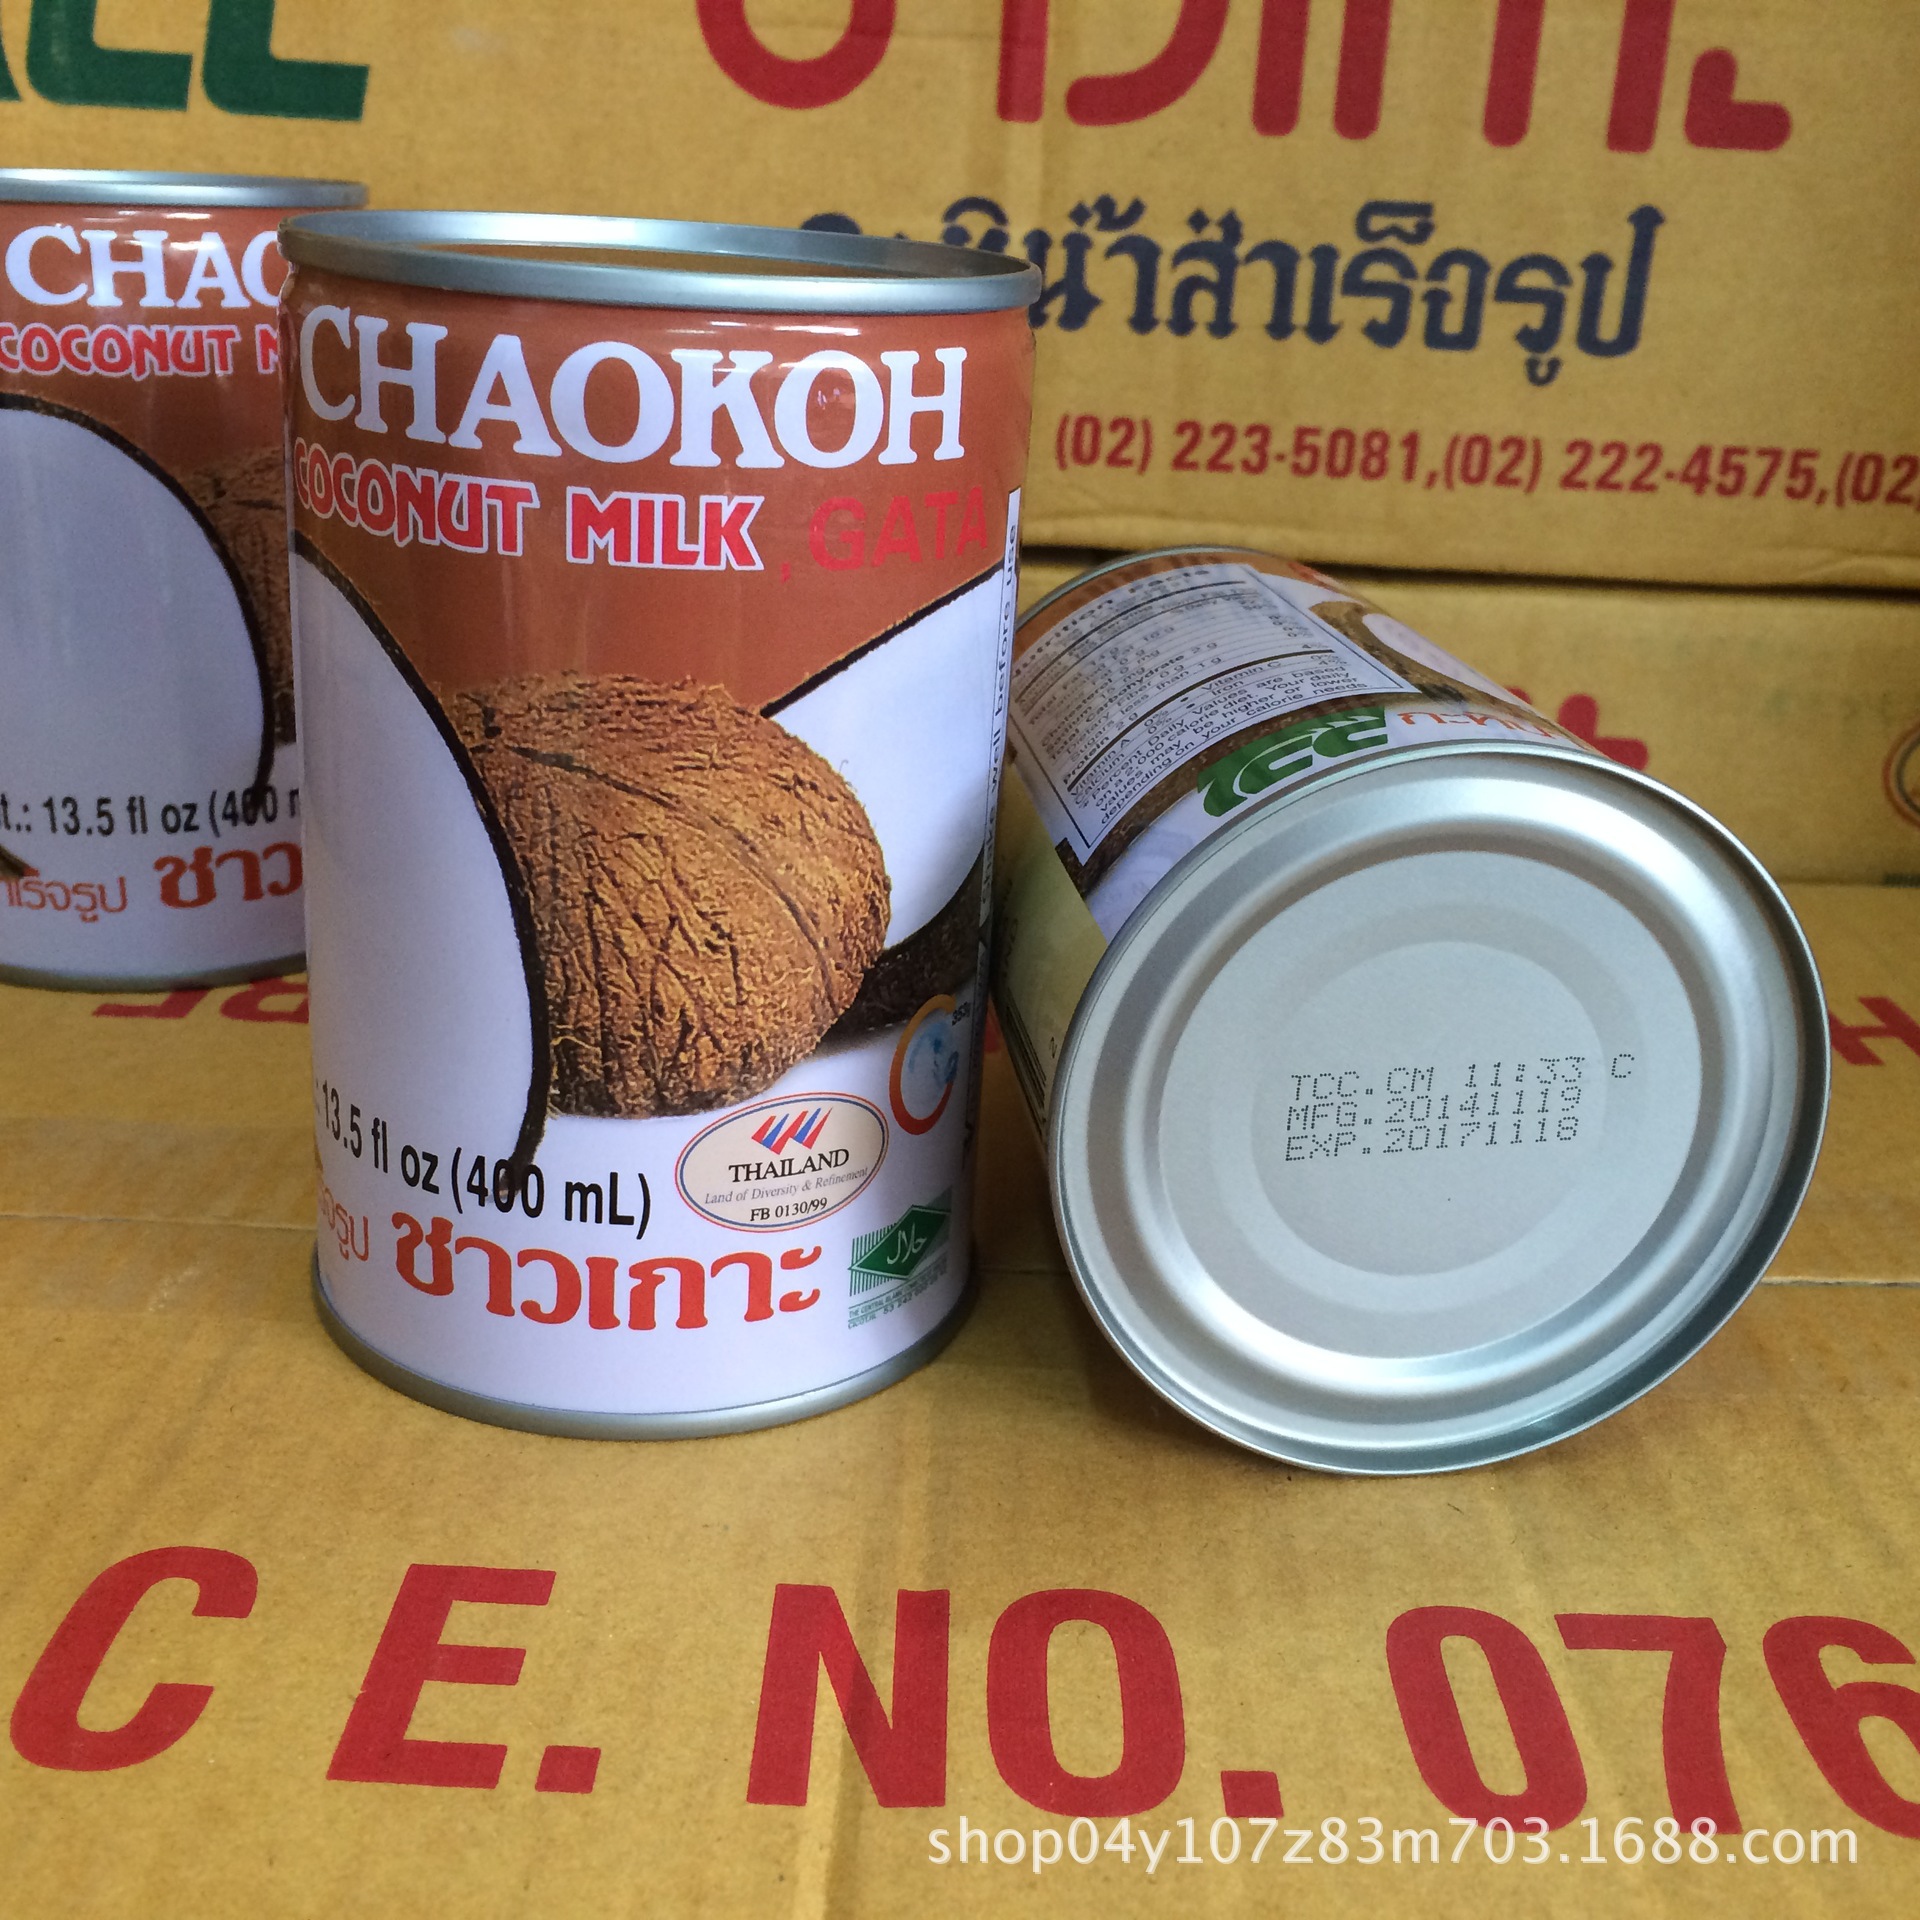 泰国进口 俏果椰浆 罐装椰浆 甜品椰浆 CHAOKOH椰浆 400ML*24/箱